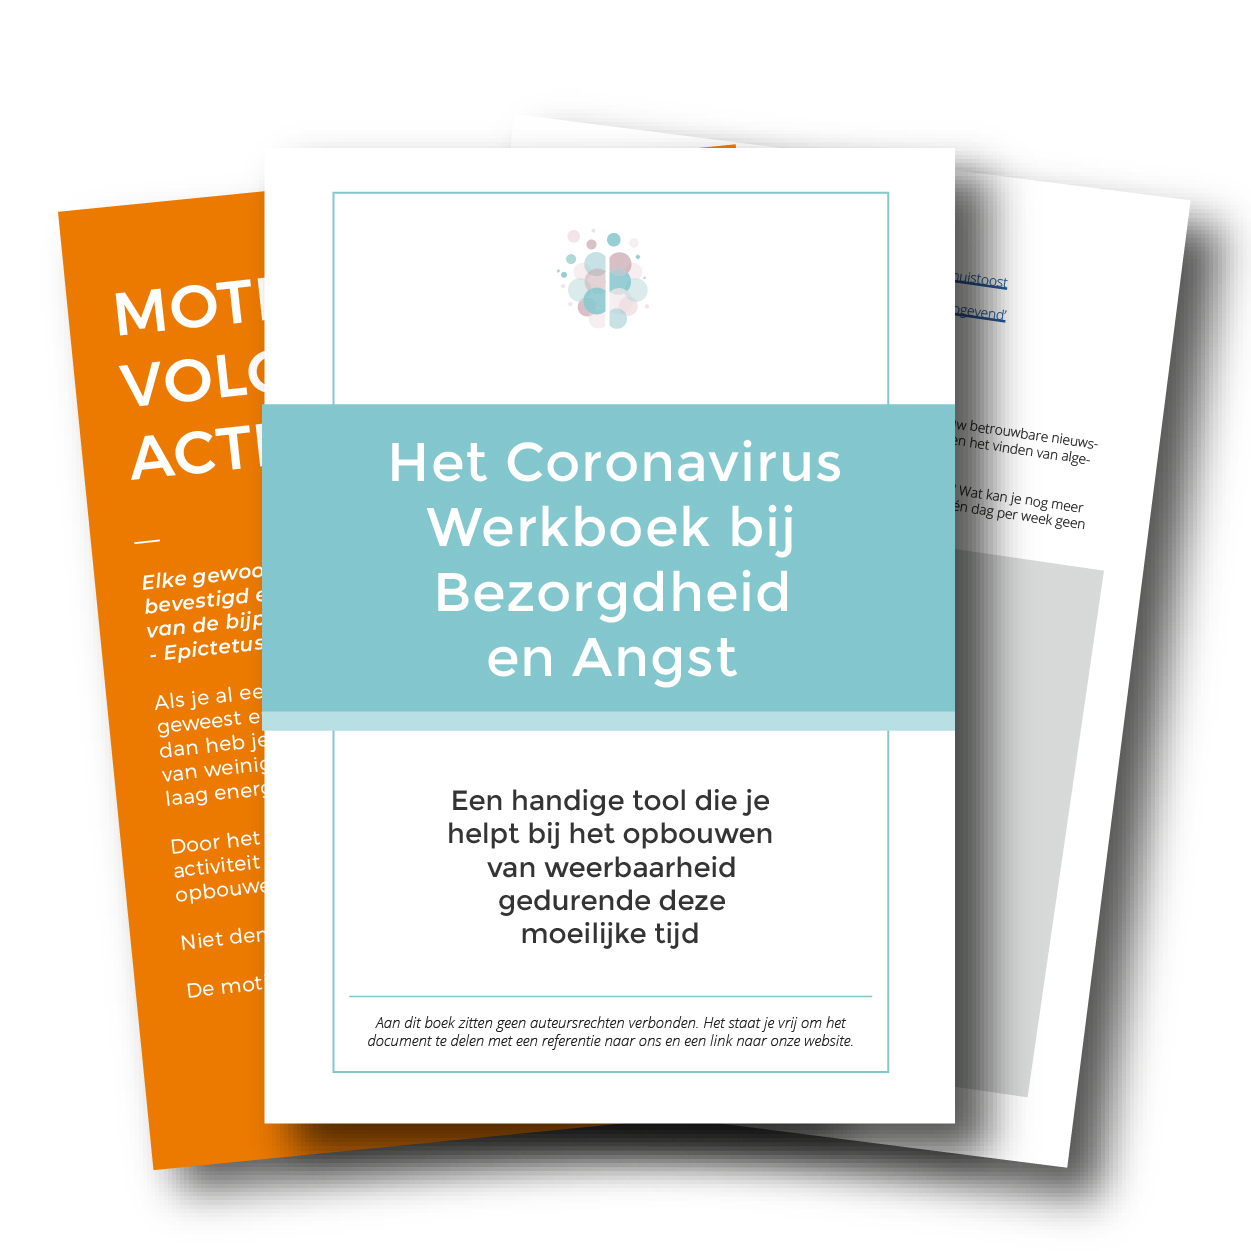 Coronavirus Anxiety Workbook